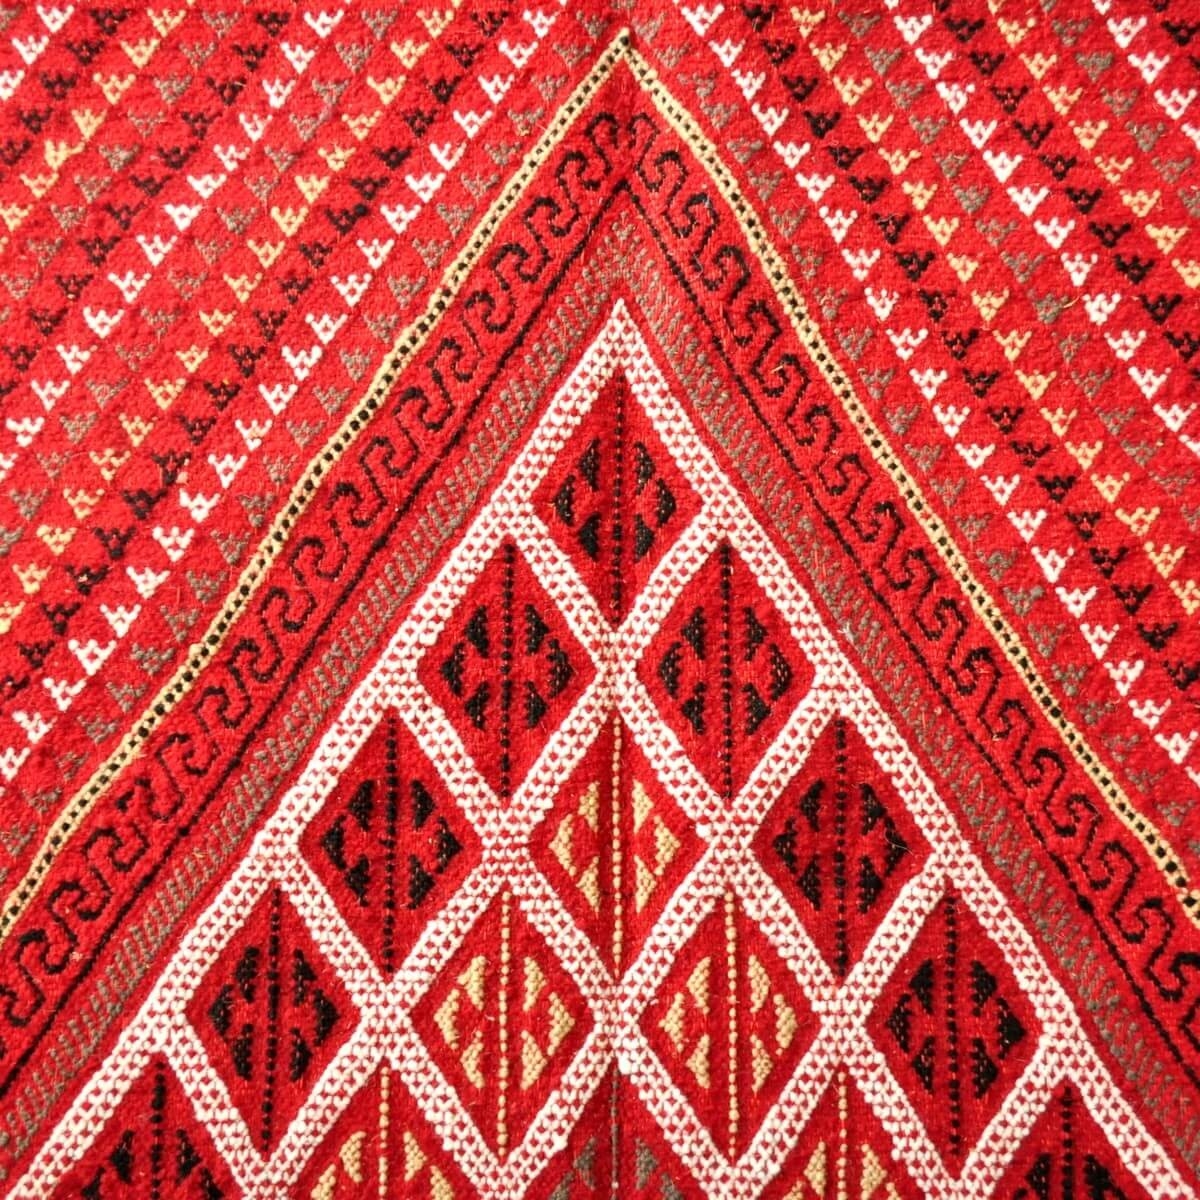 Berber carpet Large Rug Margoum Ilya 165x255 Red (Handmade, Wool, Tunisia) Tunisian margoum rug from the city of Kairouan. Recta